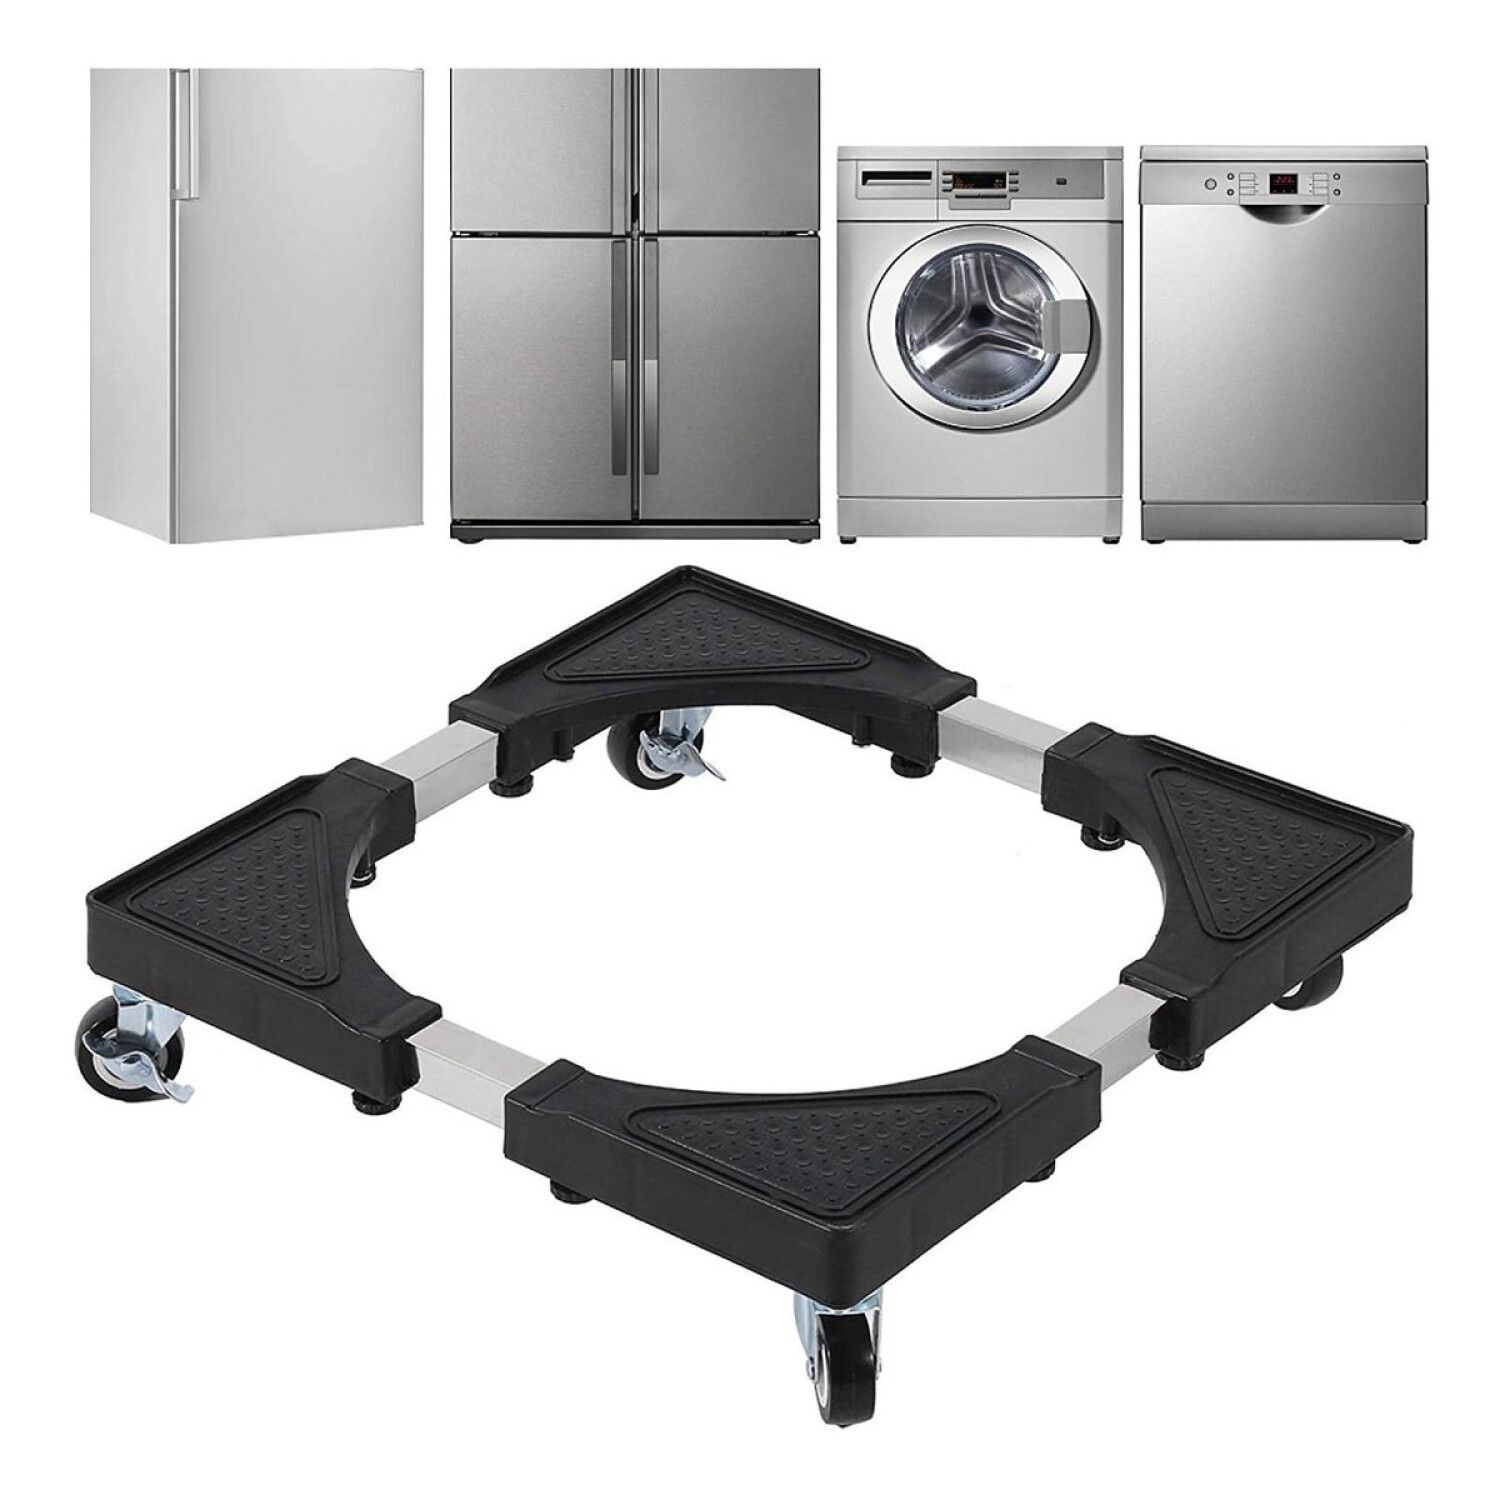 Soporte para base de lavadora, heladera y mas. Antivibración y reducen el  ruido pack 4 unidades – Tubelux